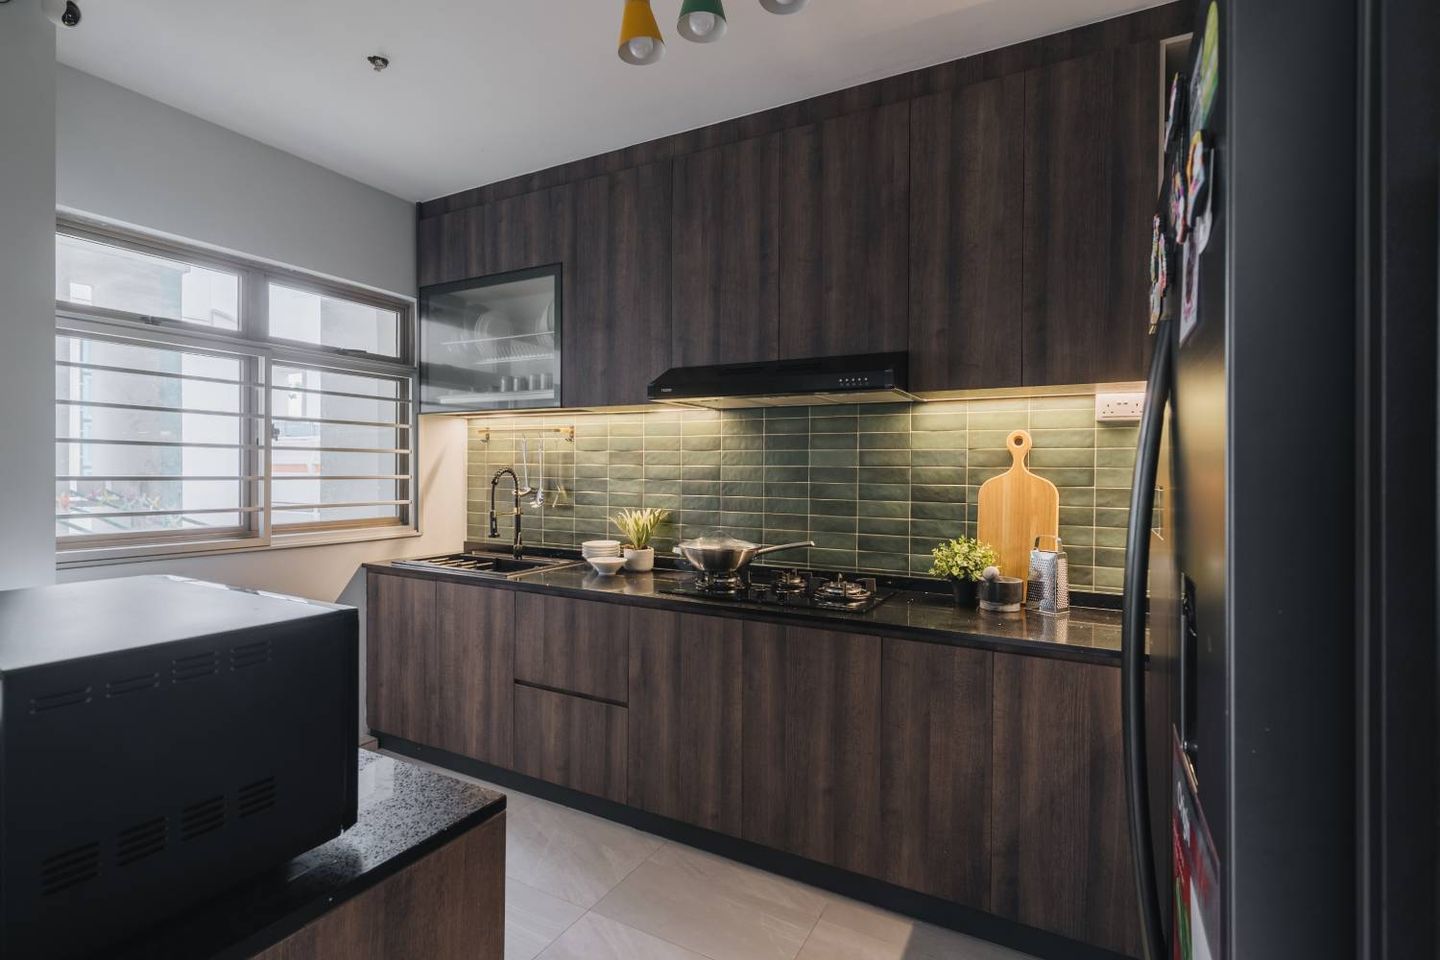 Kitchen Backsplash With Green Ceramic Tiling Design - Livspace